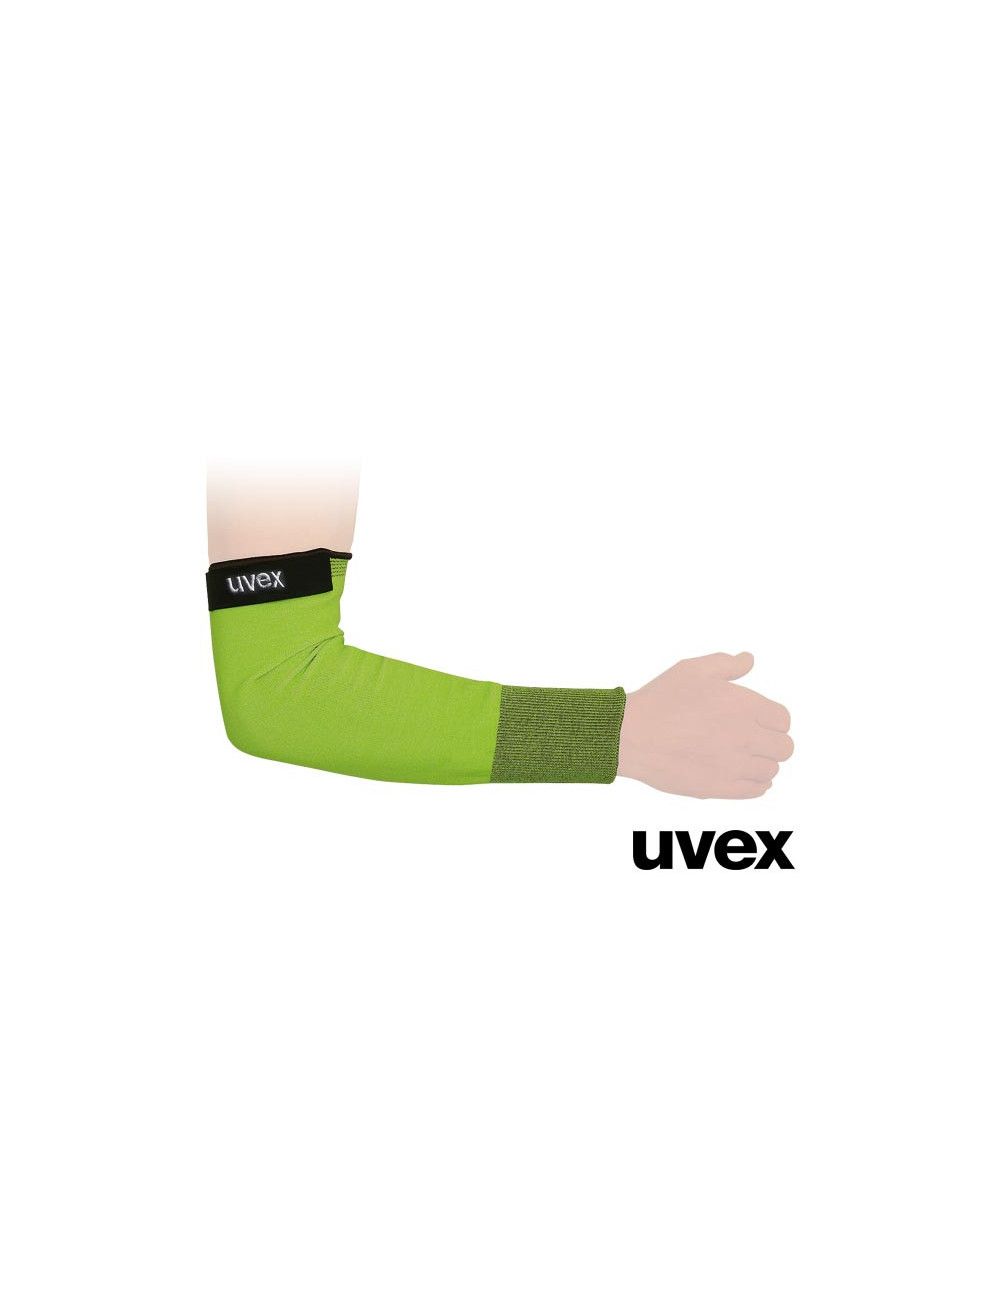 Ochraniacze przedramienia zb zielono-czarny Uvex Ruvex-sleeve